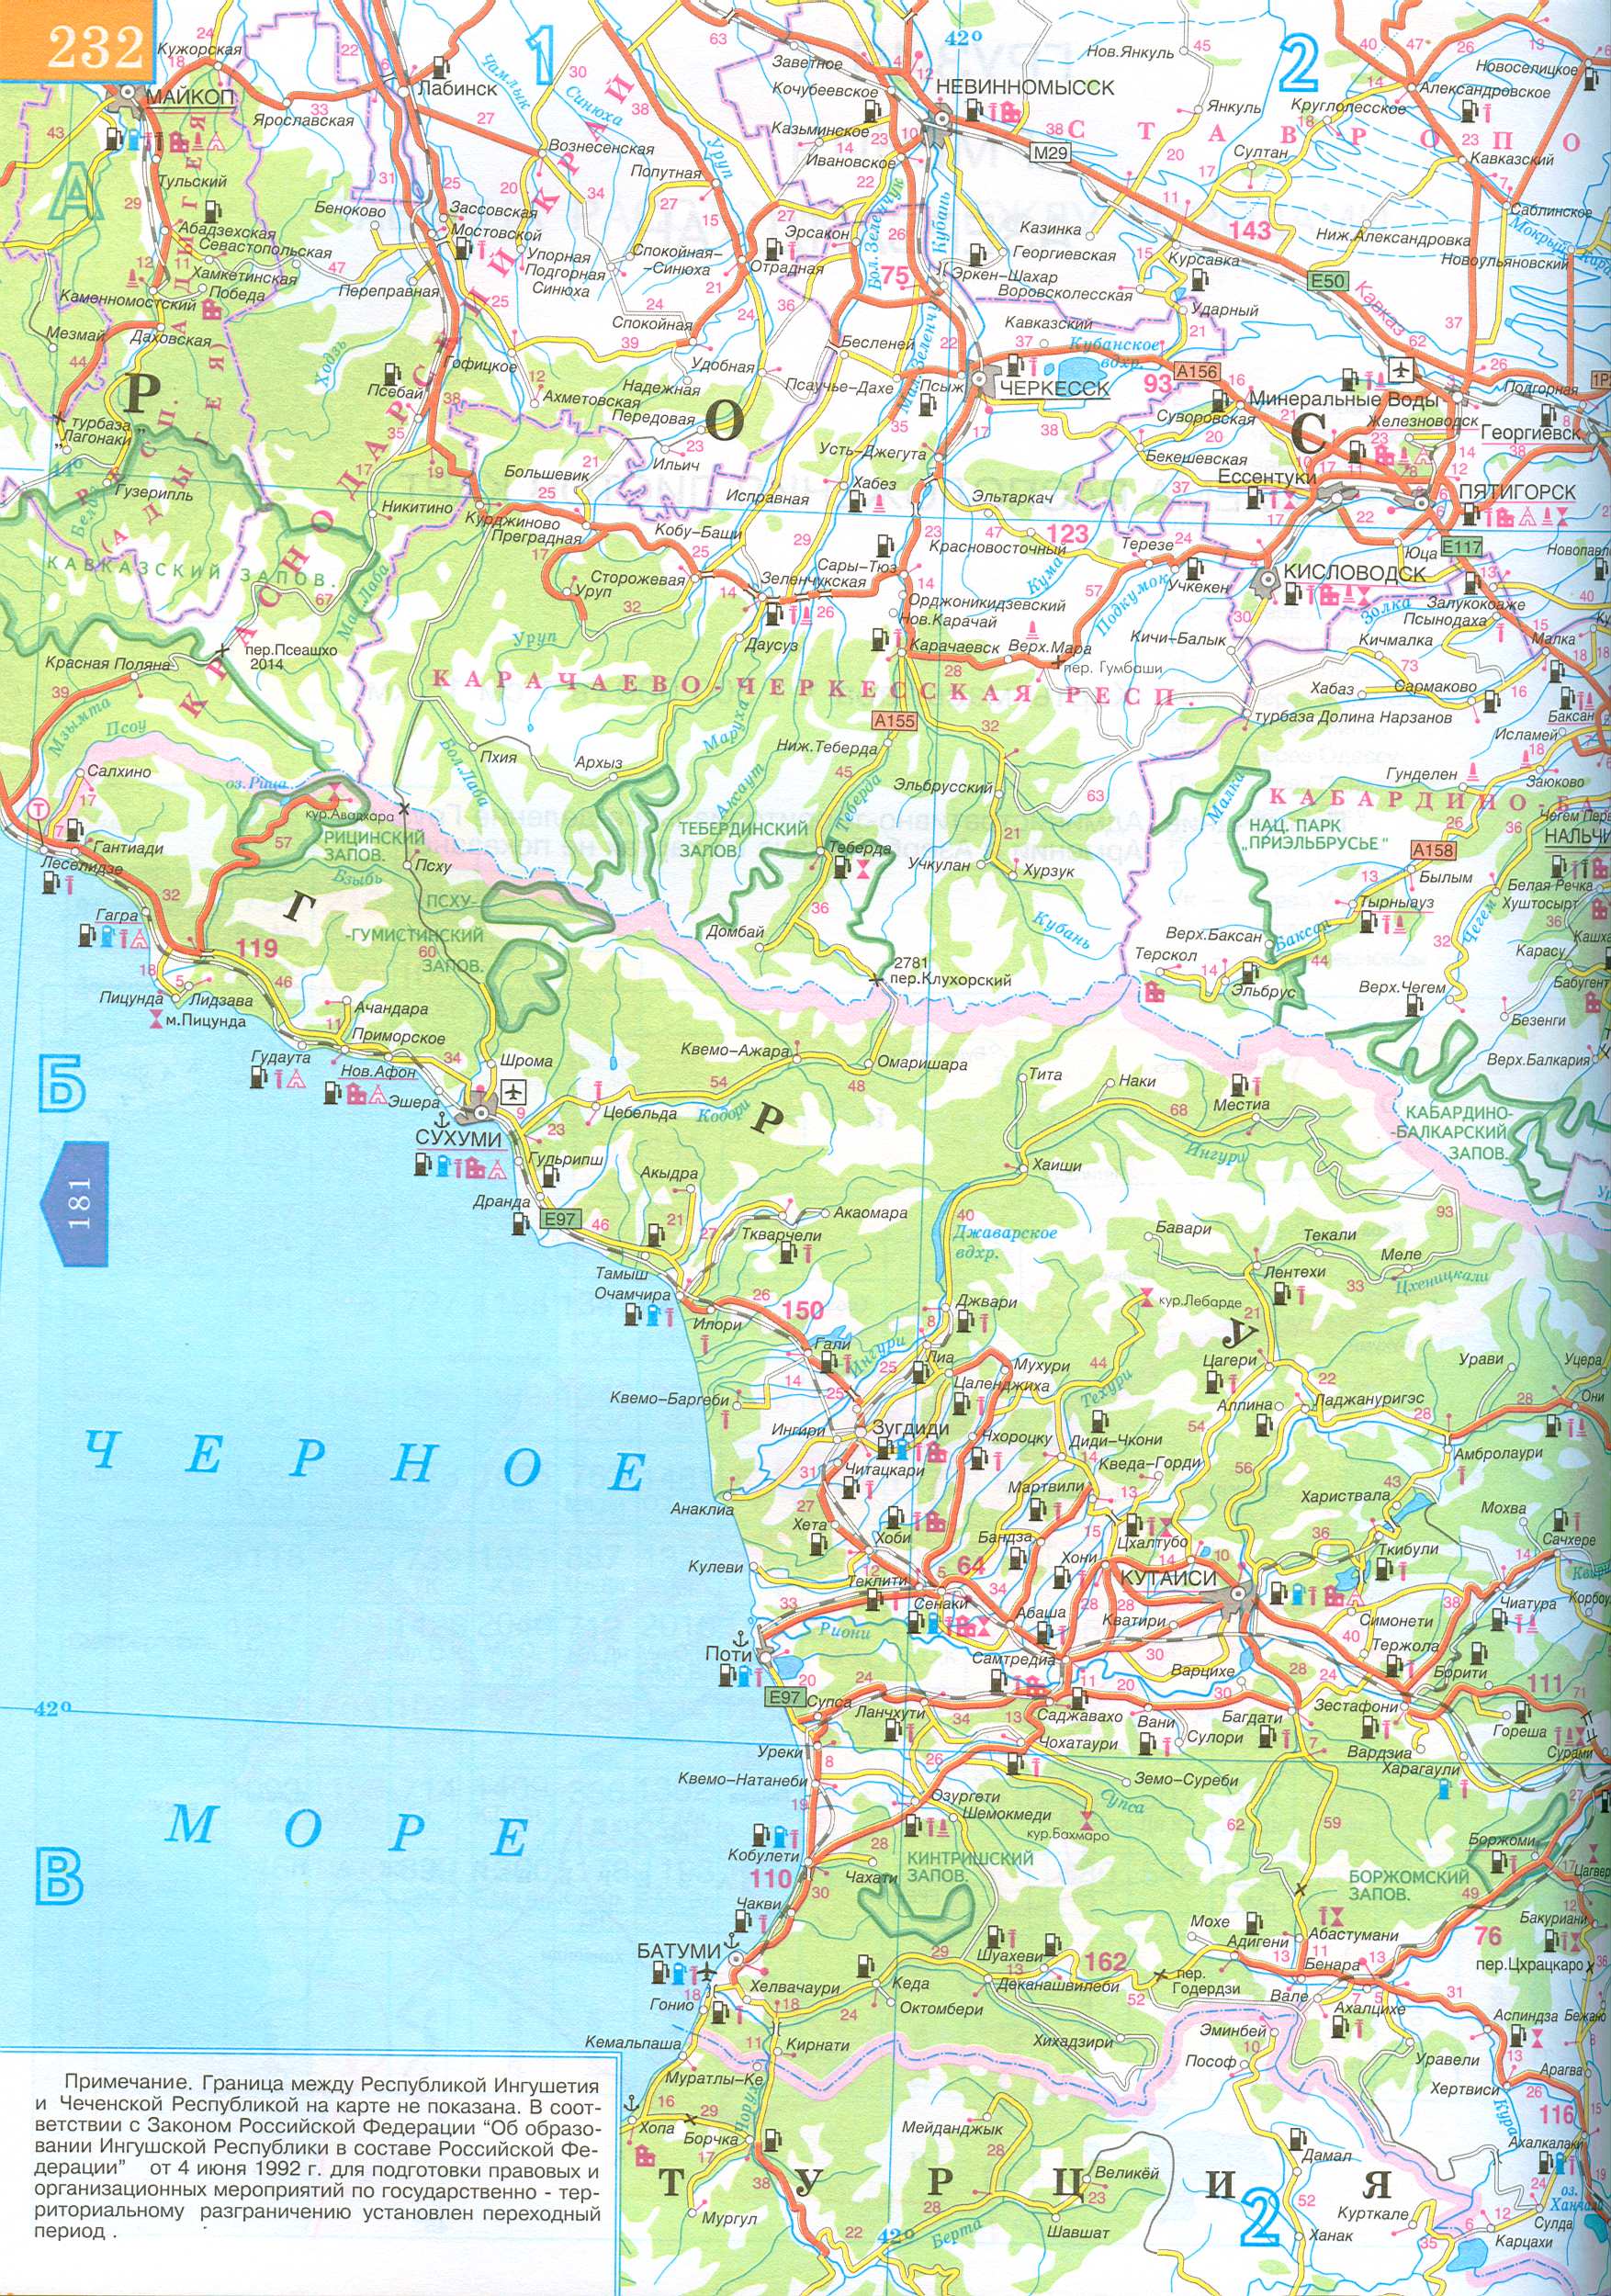 Karte von Georgia. Autobahnen - Georgien, Russland, Aserbaidschan. Kostenlos herunterladen